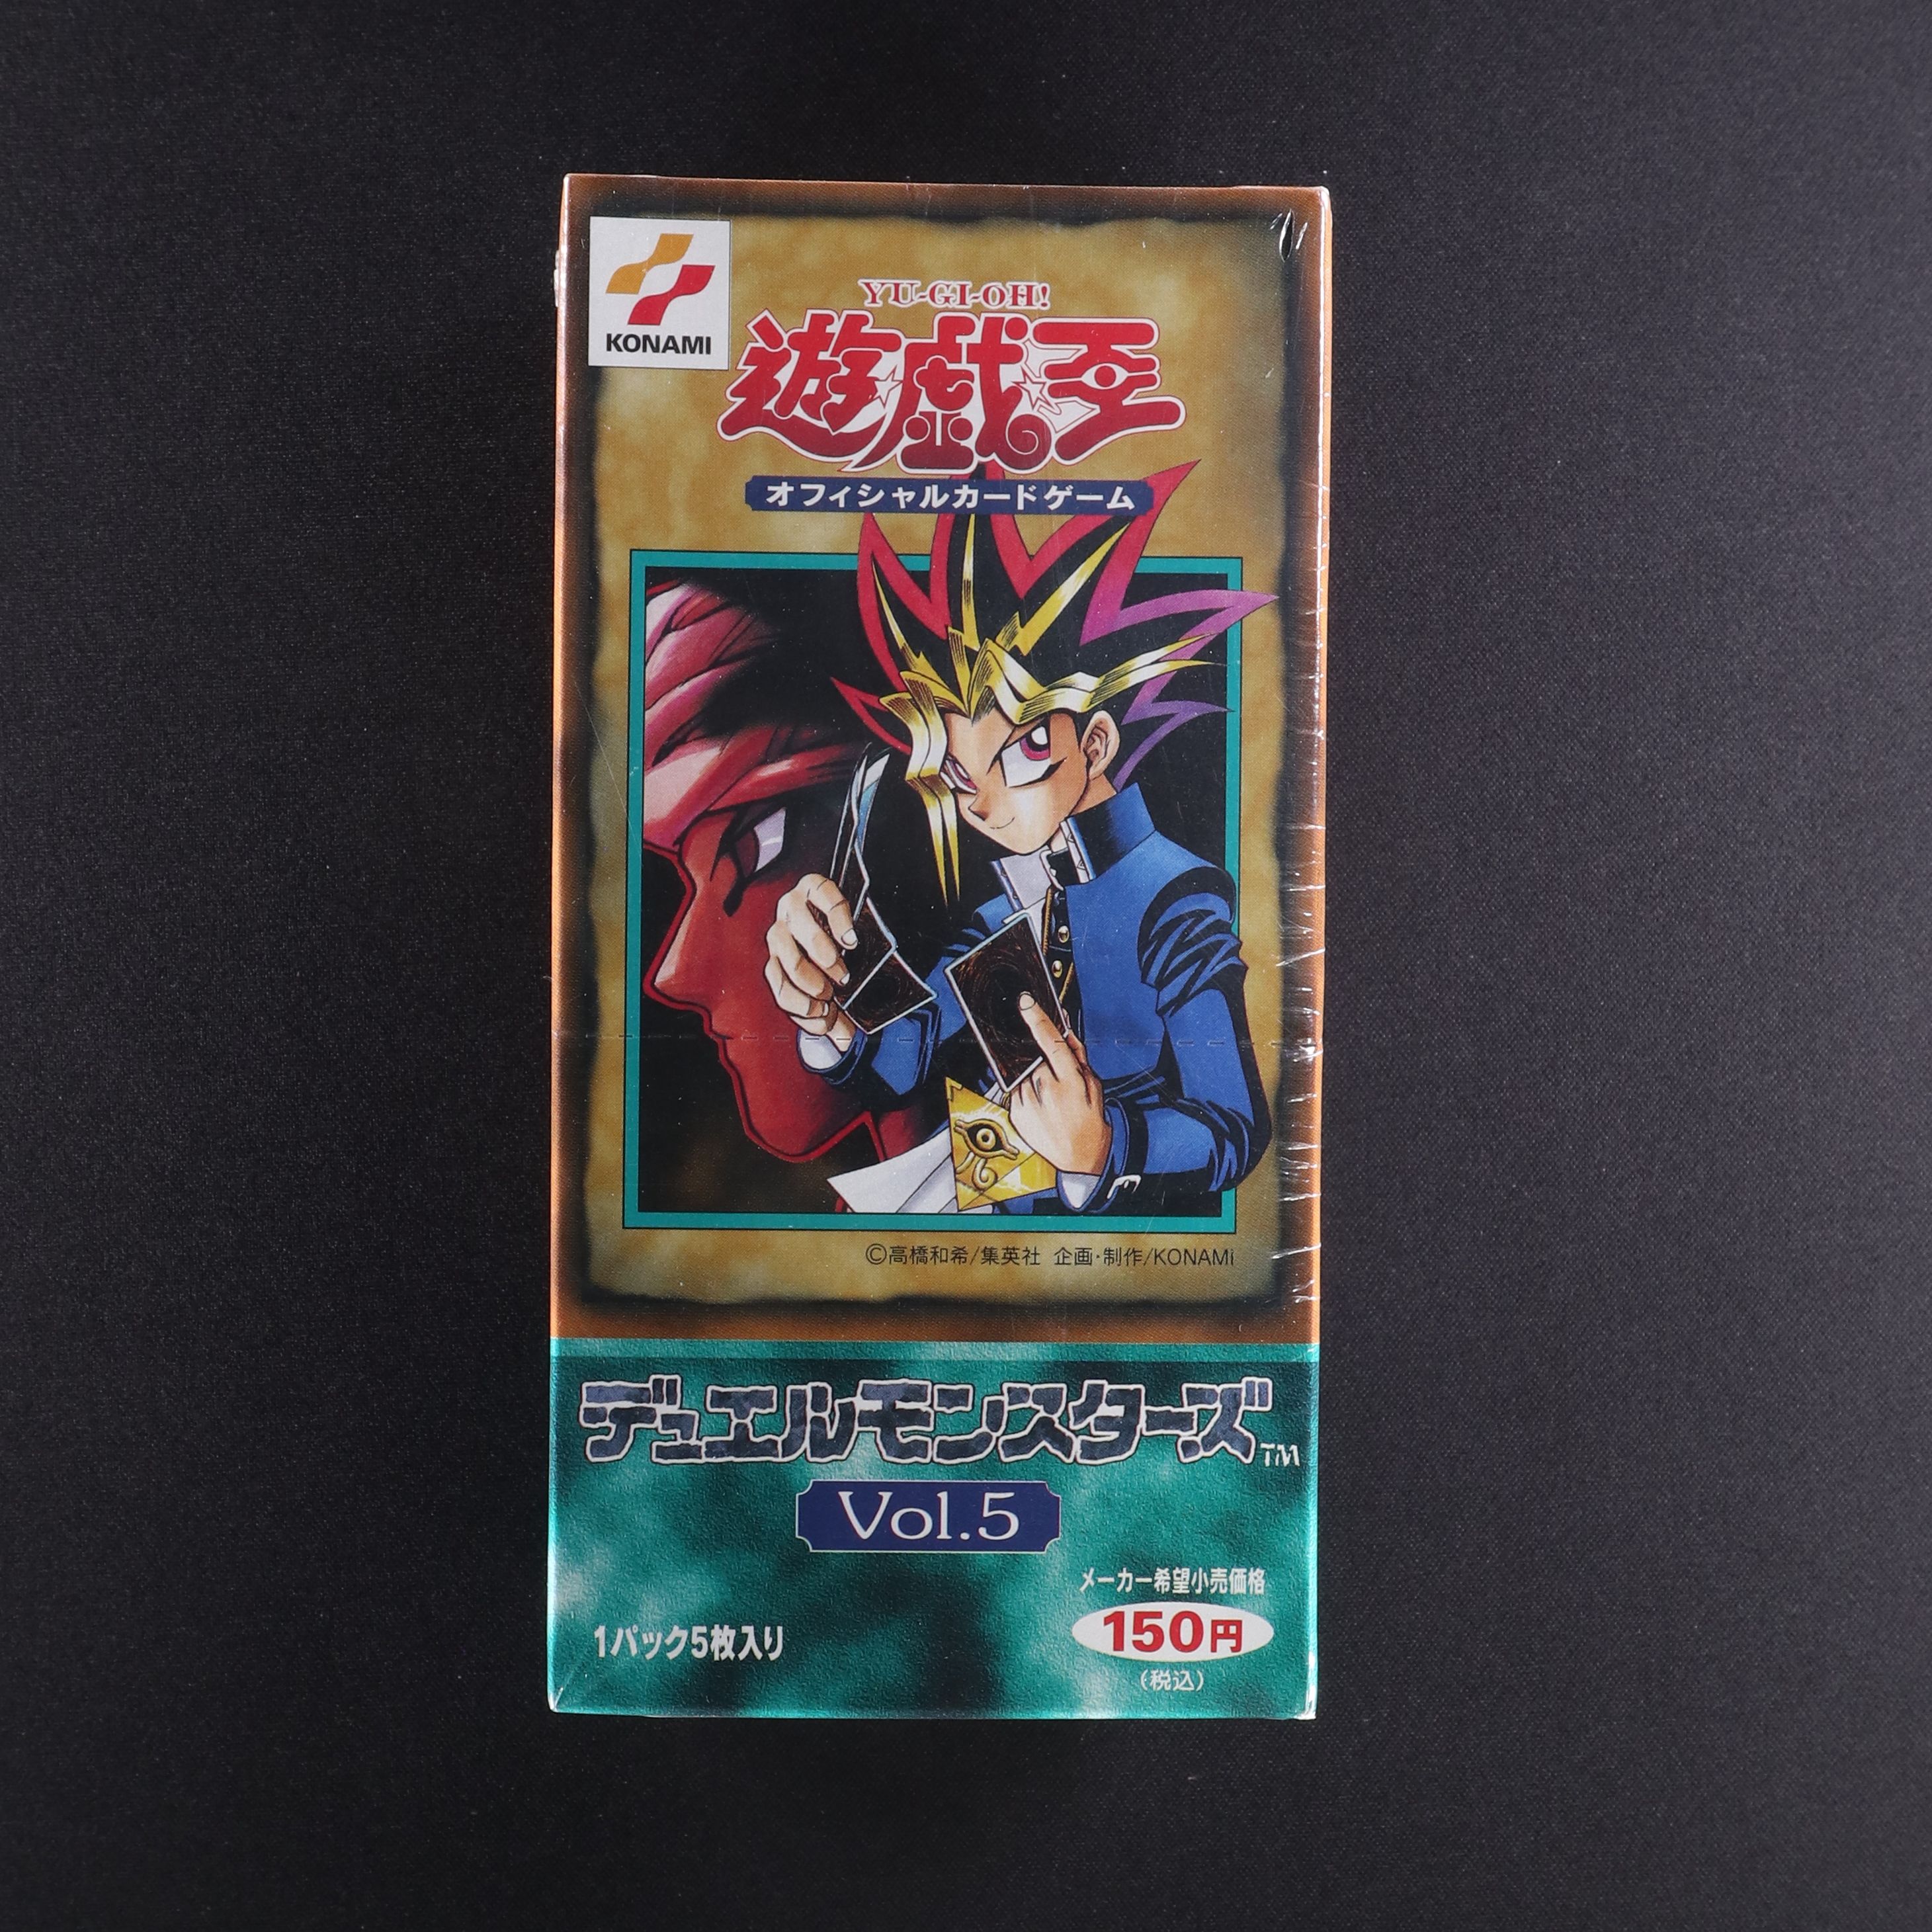 Vol 5 ボックス販売中 遊戯王カード通販のclove